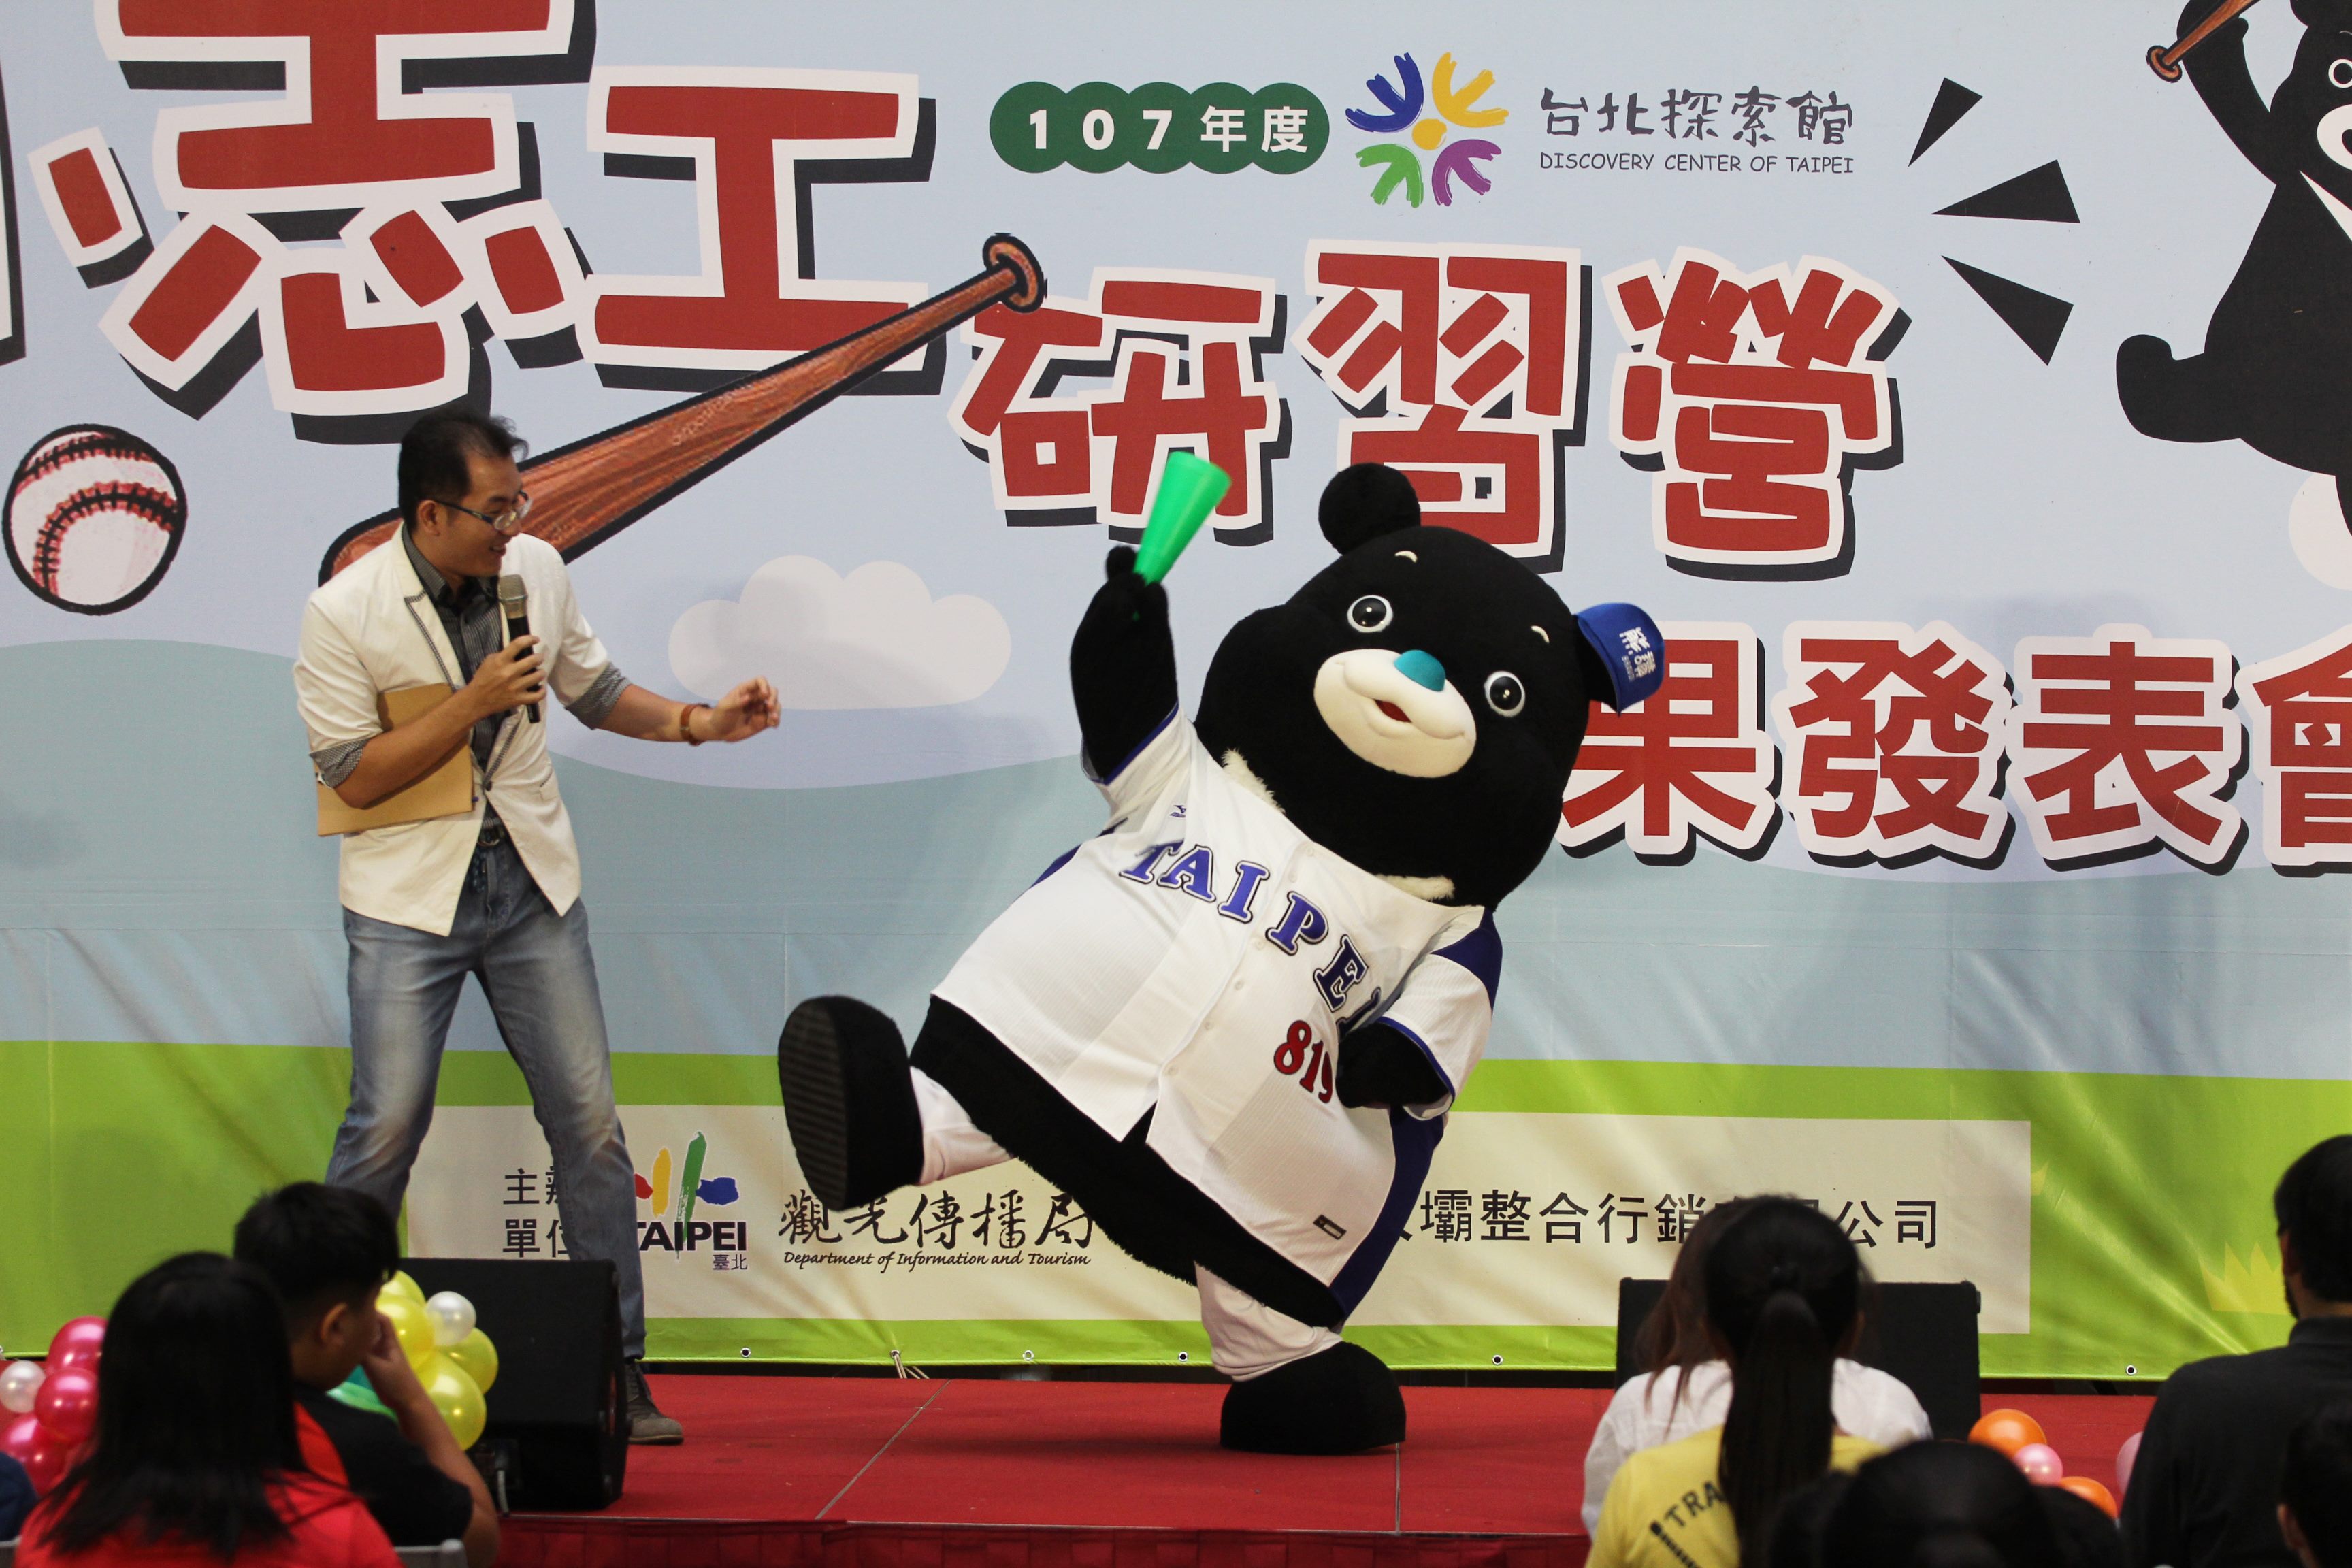 台北市吉祥物熊赞担任研习营啦啦队长陪小朋友们一起欢呼